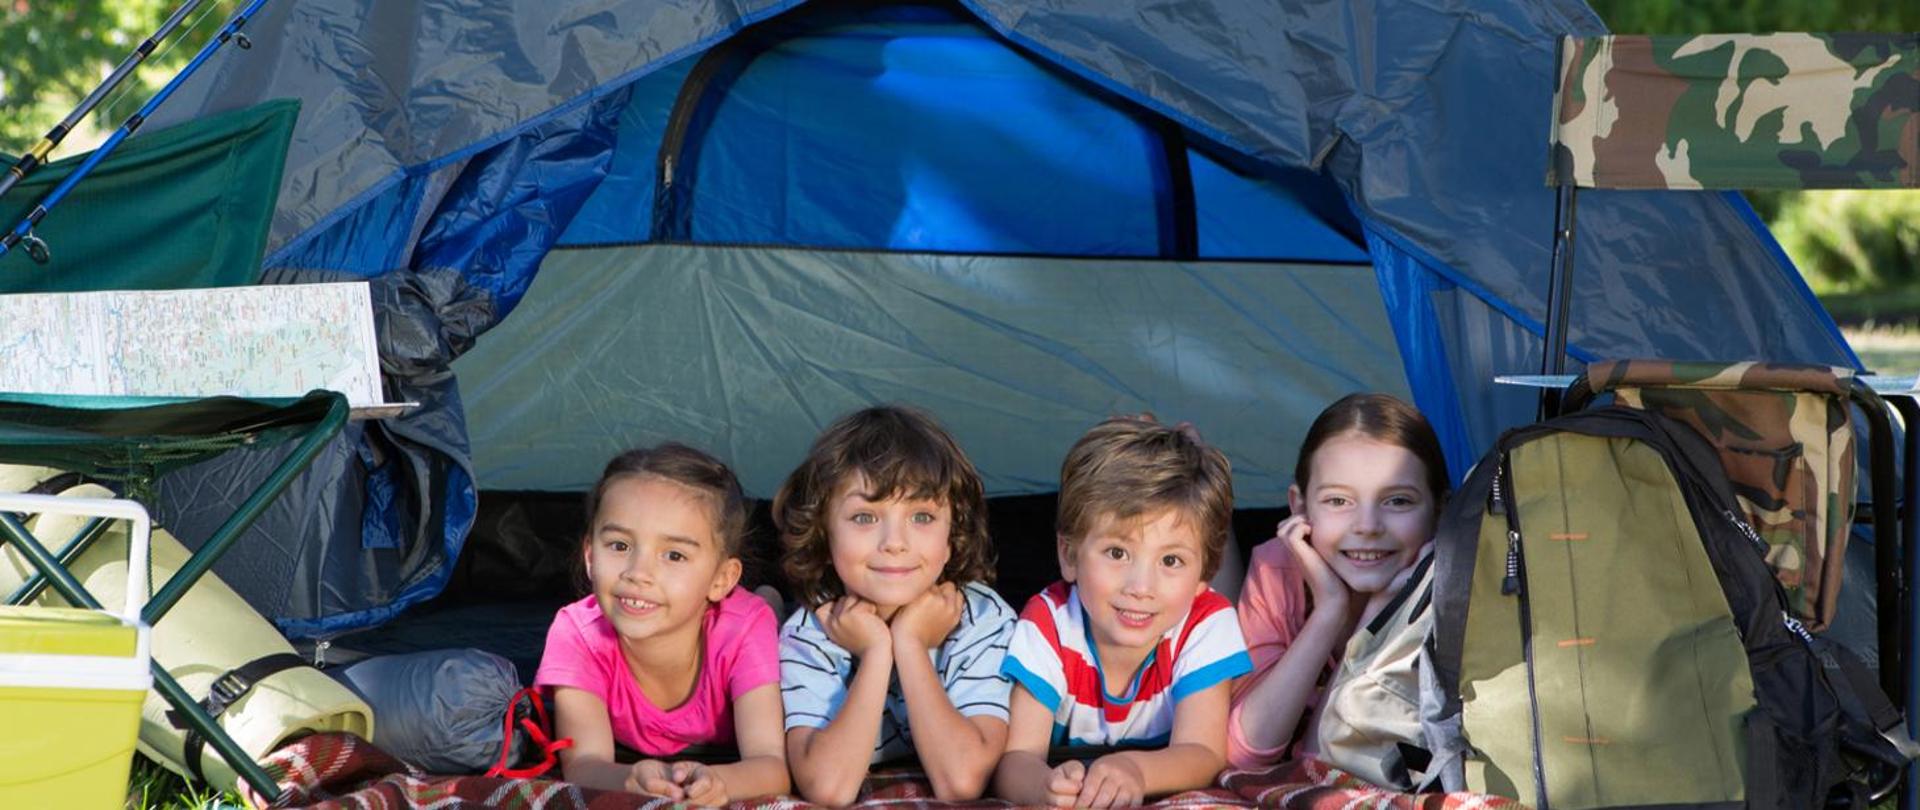 Czwórka dzieci w kolorowych ubraniach leży pod namiotem biwakowym, obok namiotu widoczne bagaże